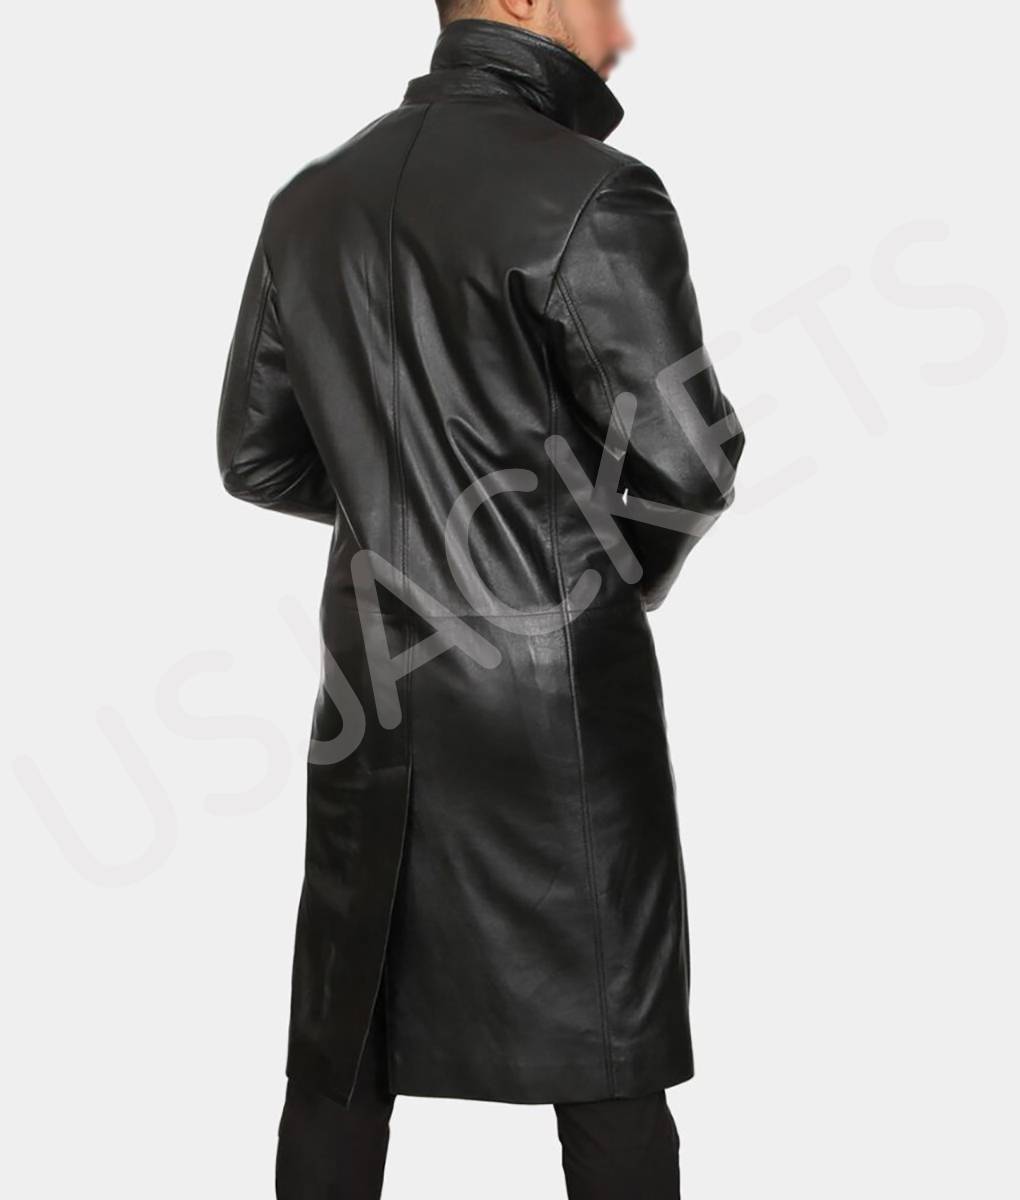 Adam Copeland Ares Black Leather Coat (1)